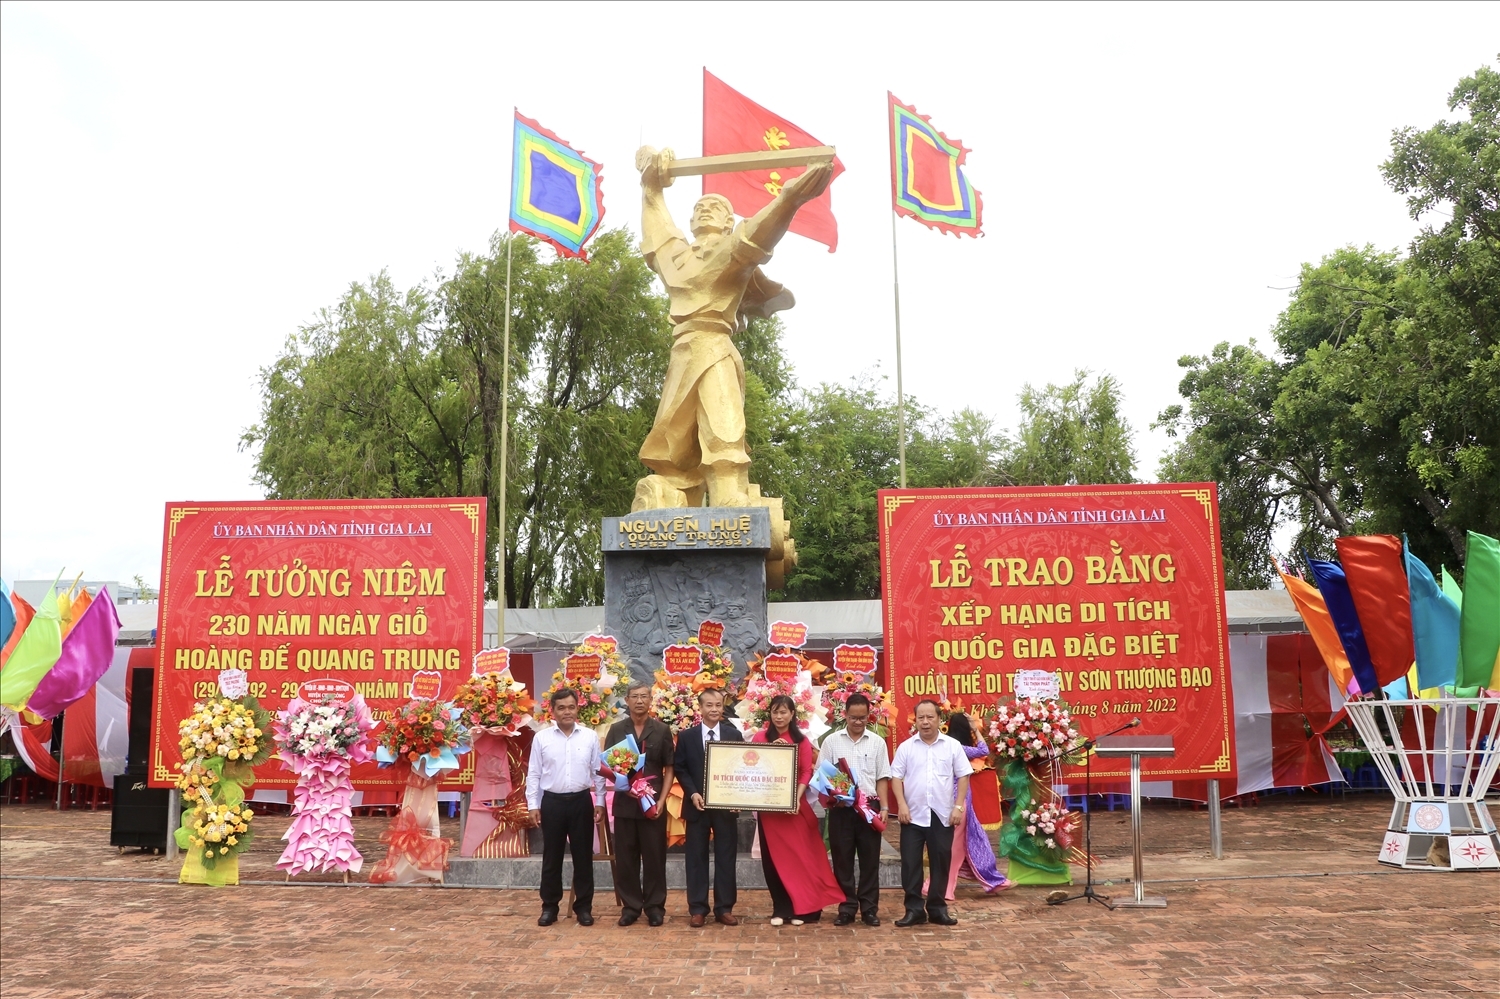 Lãnh đạo tỉnh Gia Lai trao Bằng di tích quốc gia đặc biệt đối với quần thể Tây Sơn Thượng Đạo